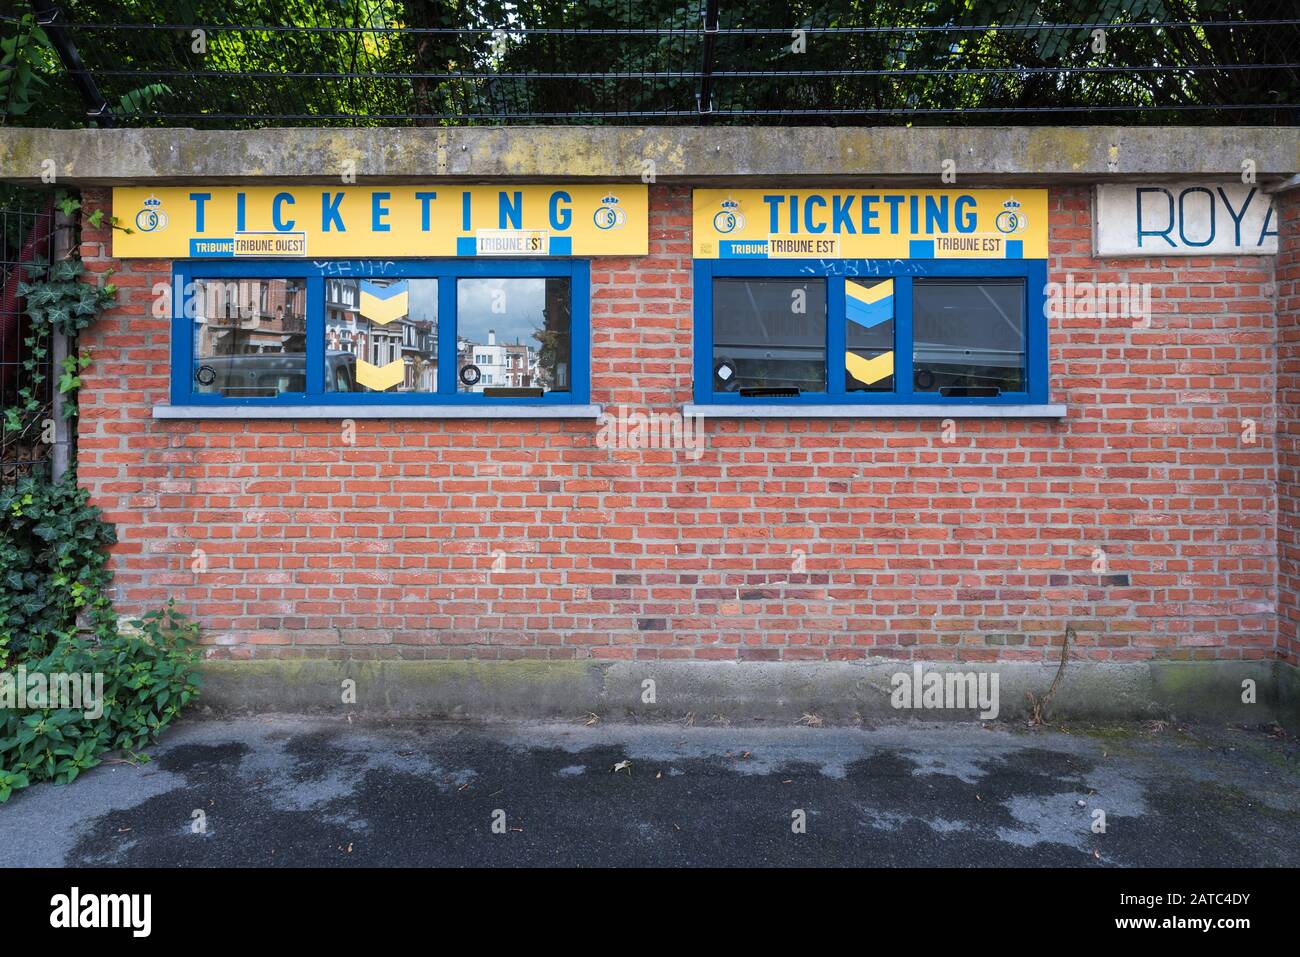 Saint Gilles, Bruxelles Capital Region / Belgio - 09 07 2019: La biglietteria dello stadio Union Saint Gilloise Foto Stock